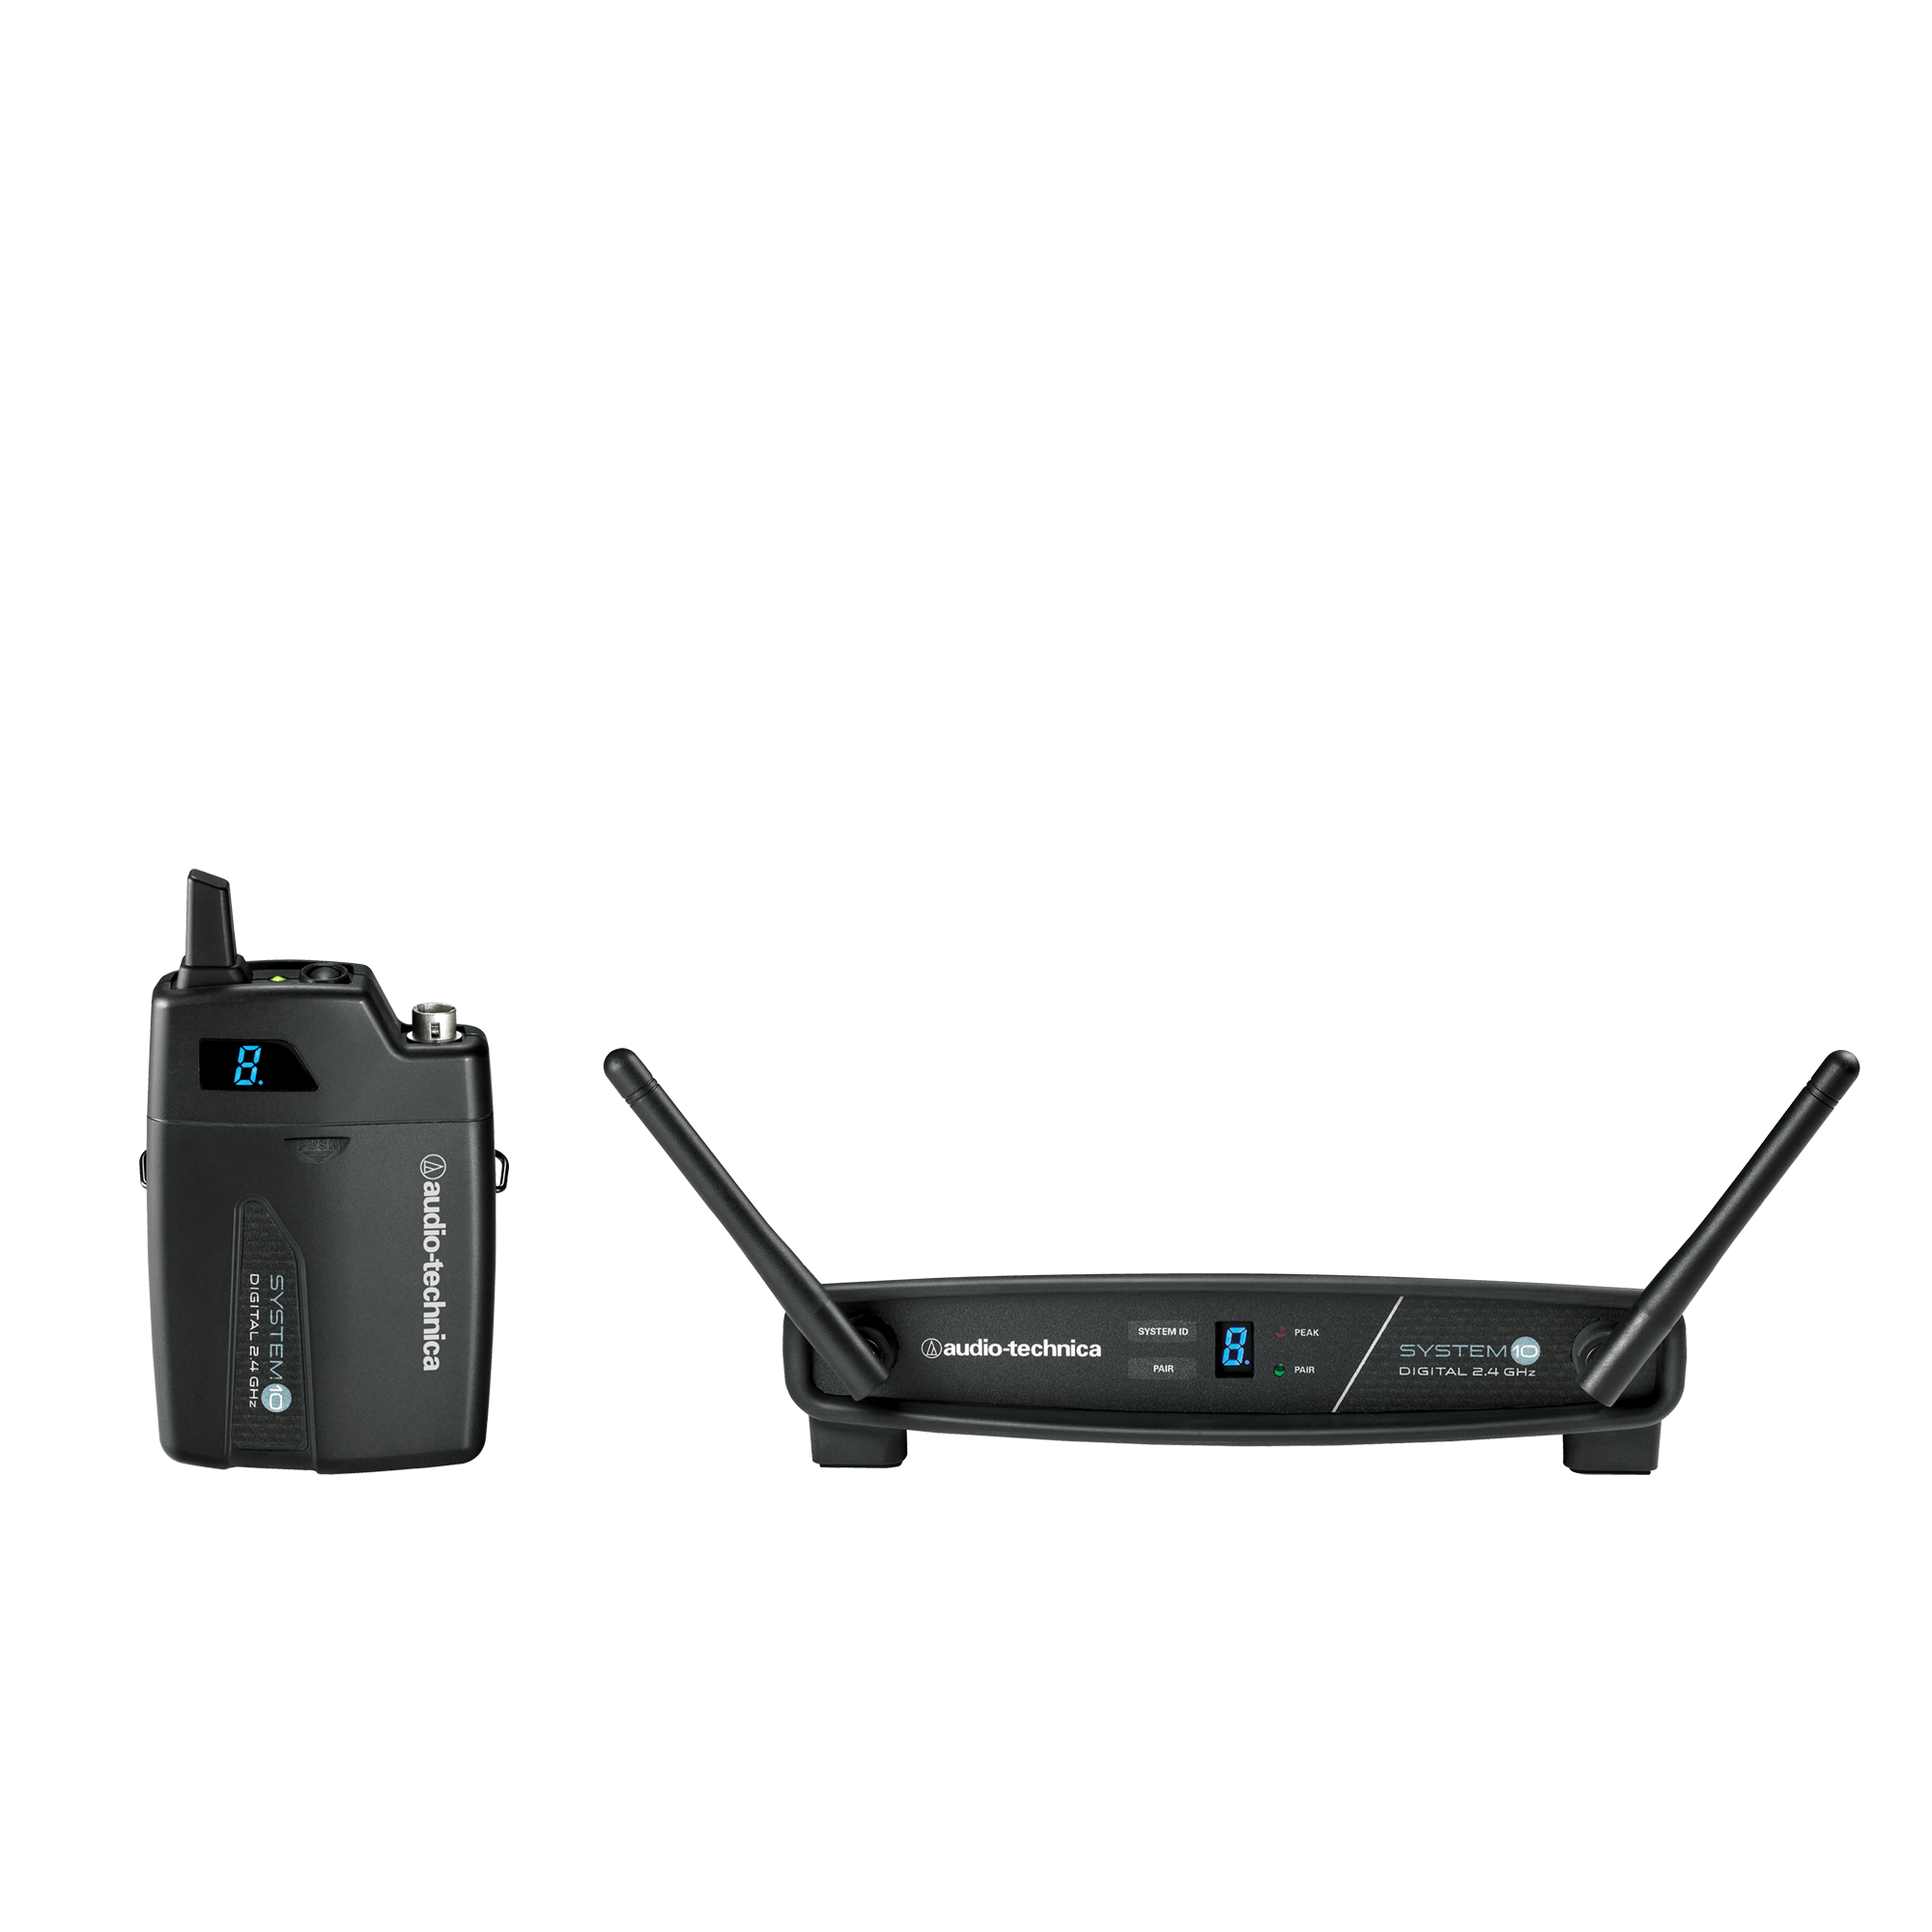 ATW-1101/H92  2.4GHz Digital Wireless System with PRO92CW, Black Headset